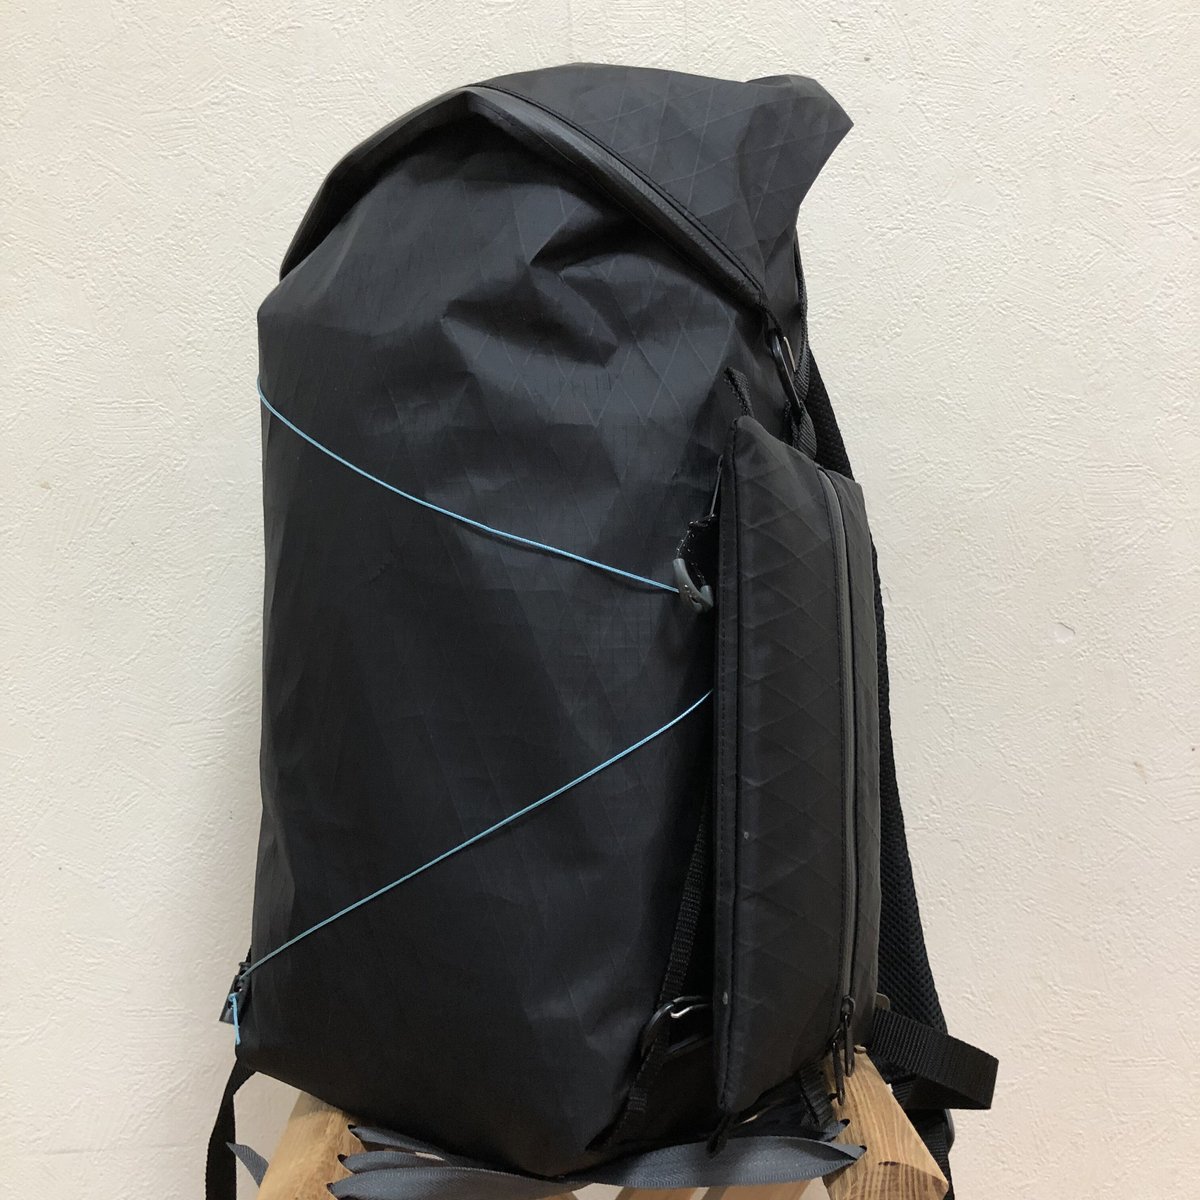 Everyday backpack | aruku trail runner